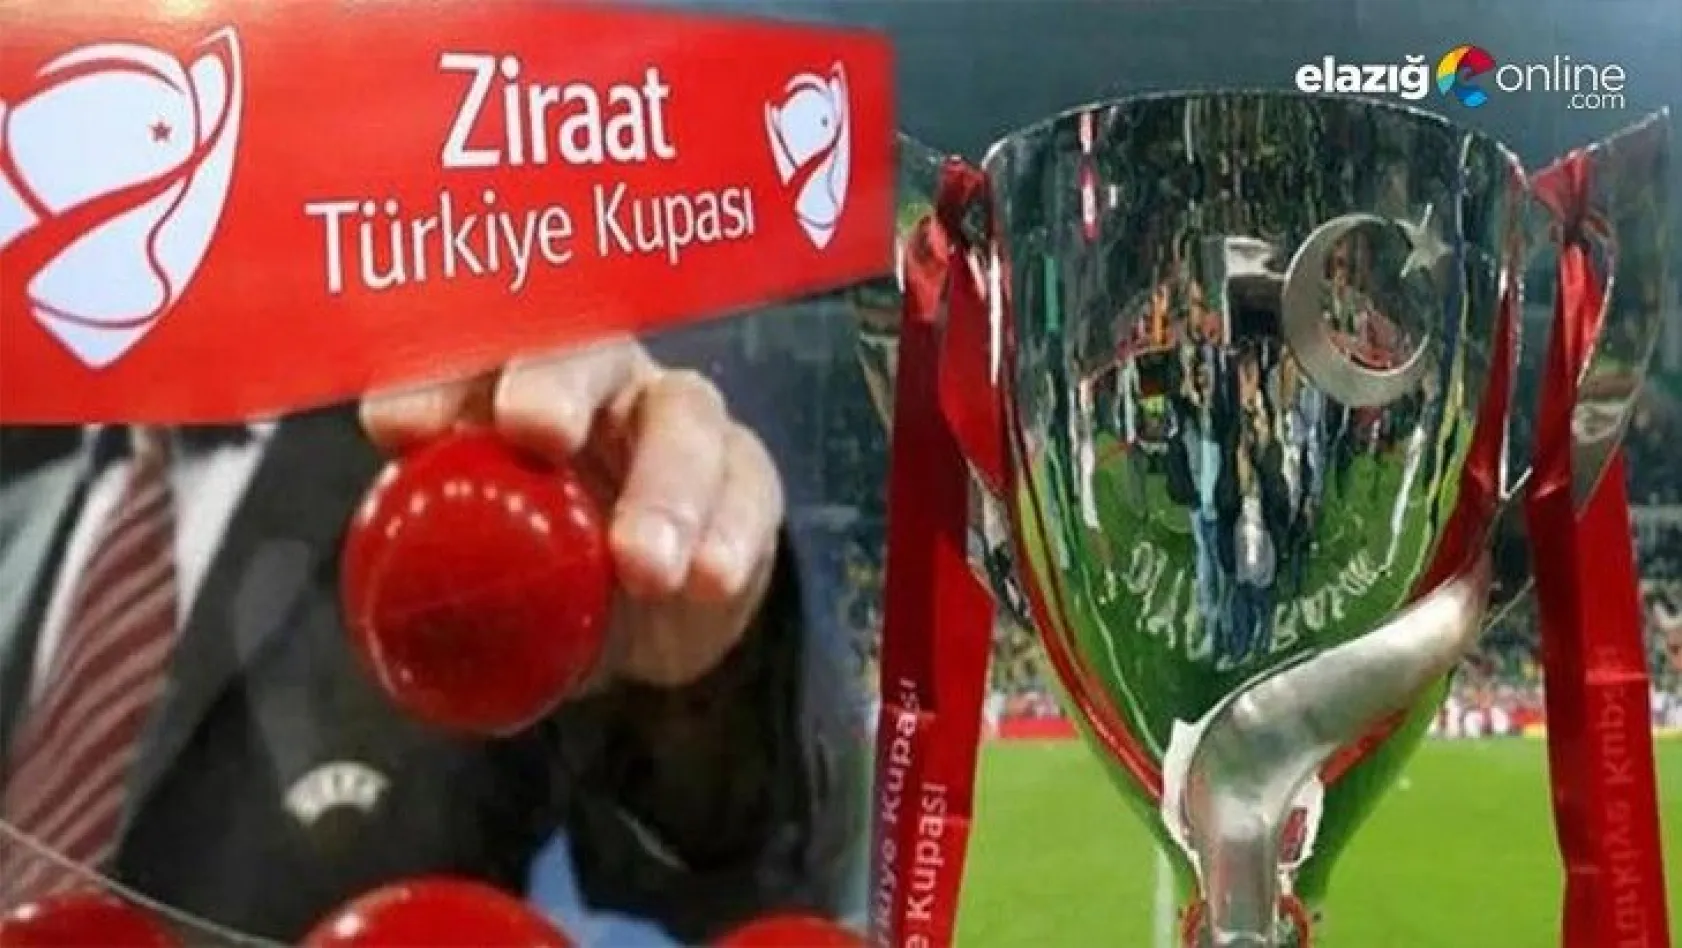 Ziraat Türkiye Kupasında Elazığ takımlarının rakipleri belli oldu